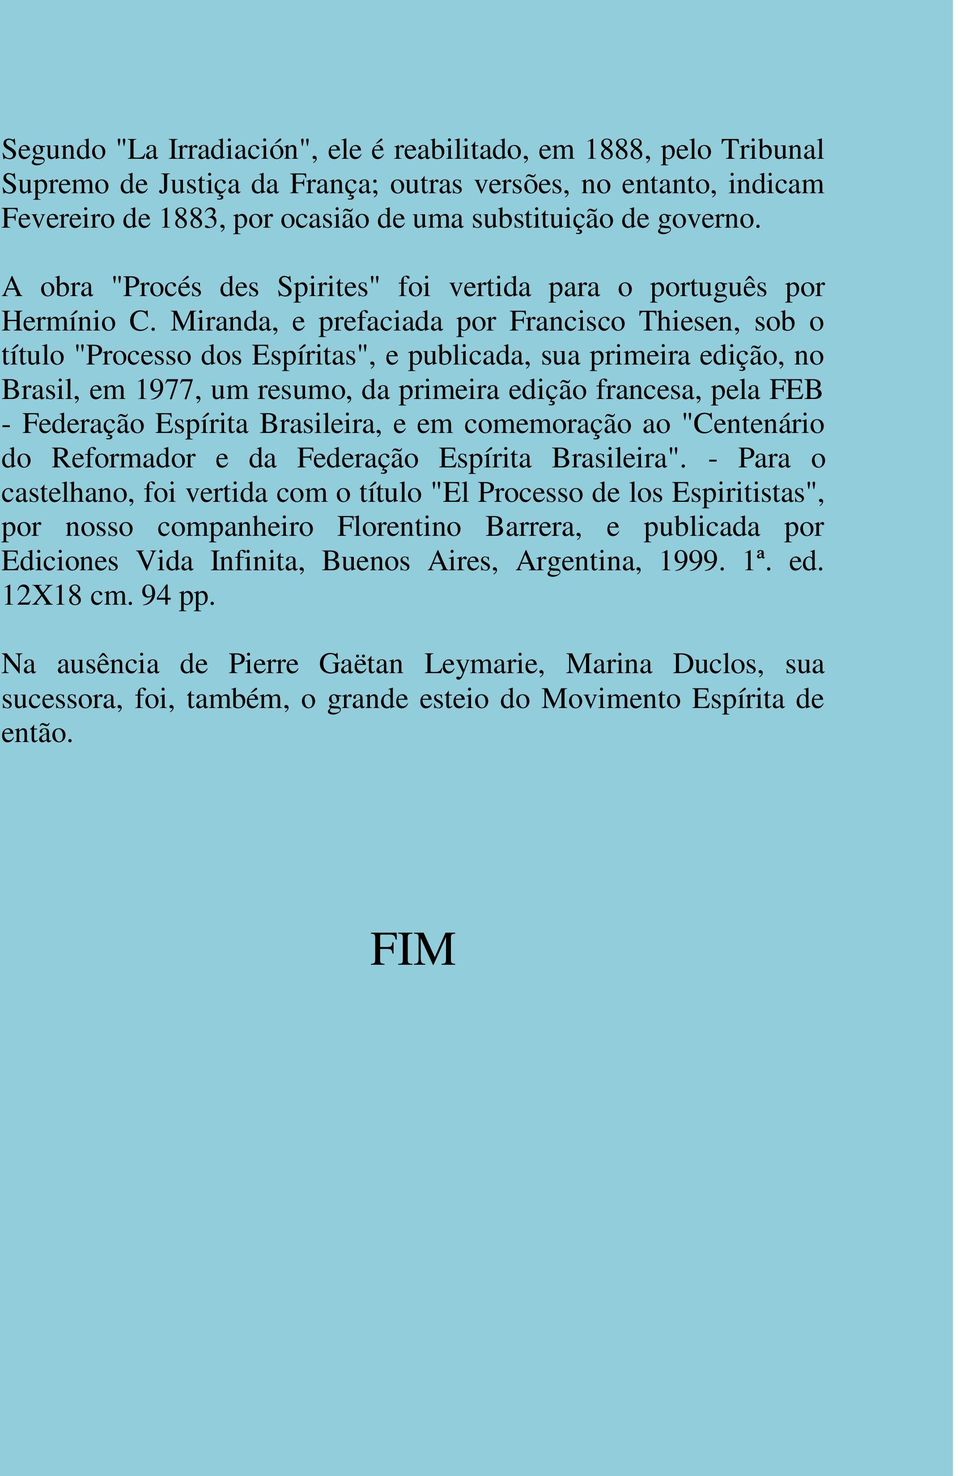 Miranda, e prefaciada por Francisco Thiesen, sob o título "Processo dos Espíritas", e publicada, sua primeira edição, no Brasil, em 1977, um resumo, da primeira edição francesa, pela FEB - Federação